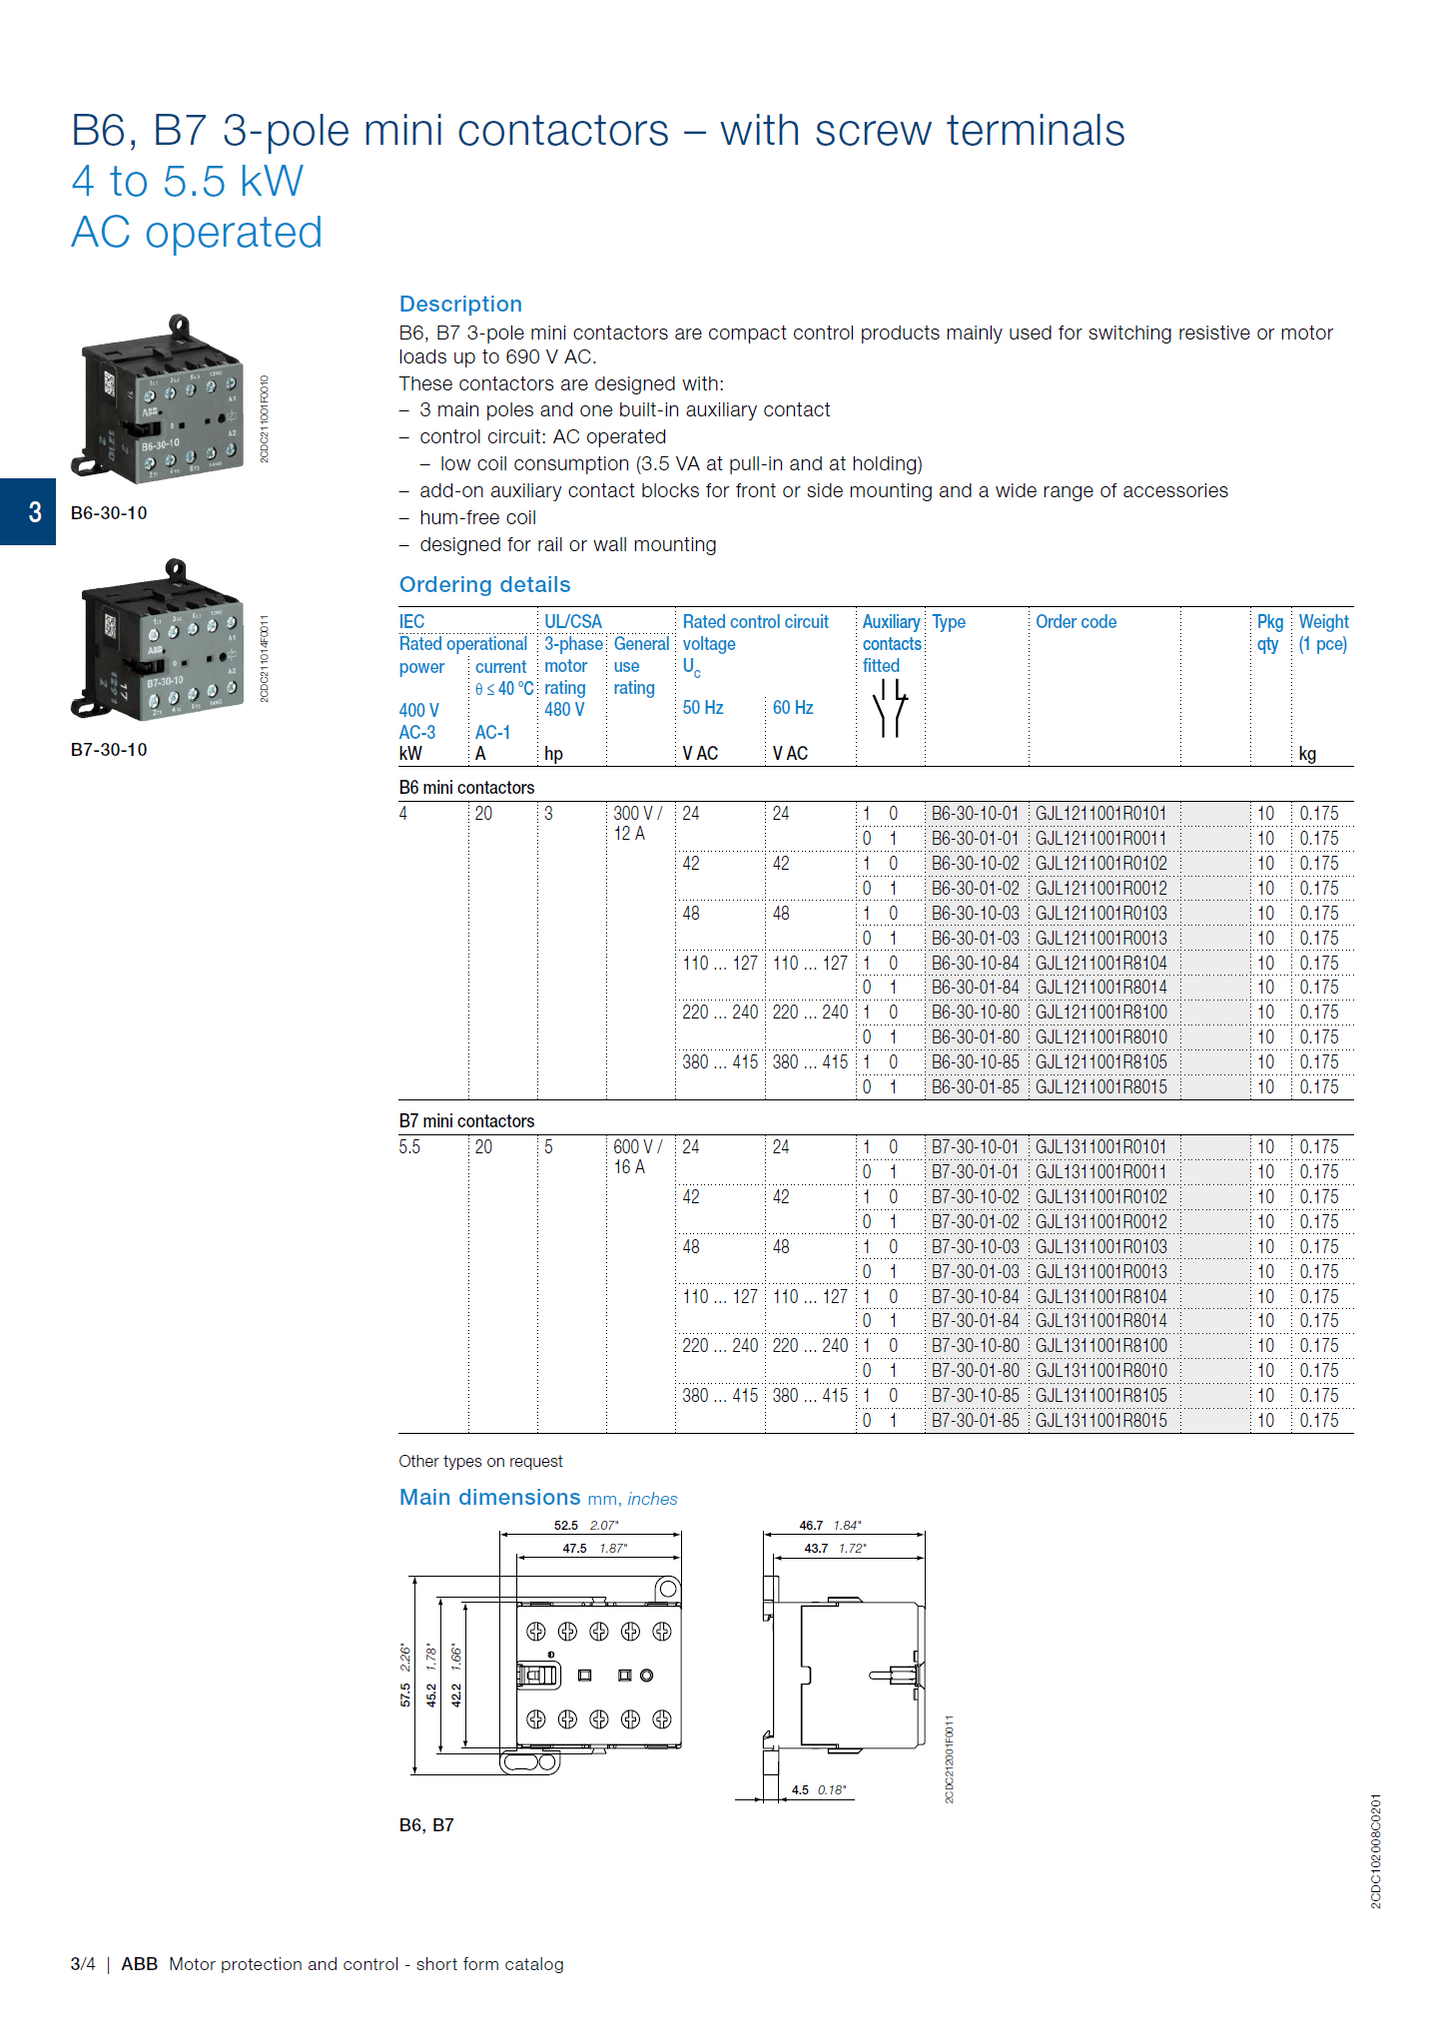 ABB B6, B7 series mini contactors: B7-22-00